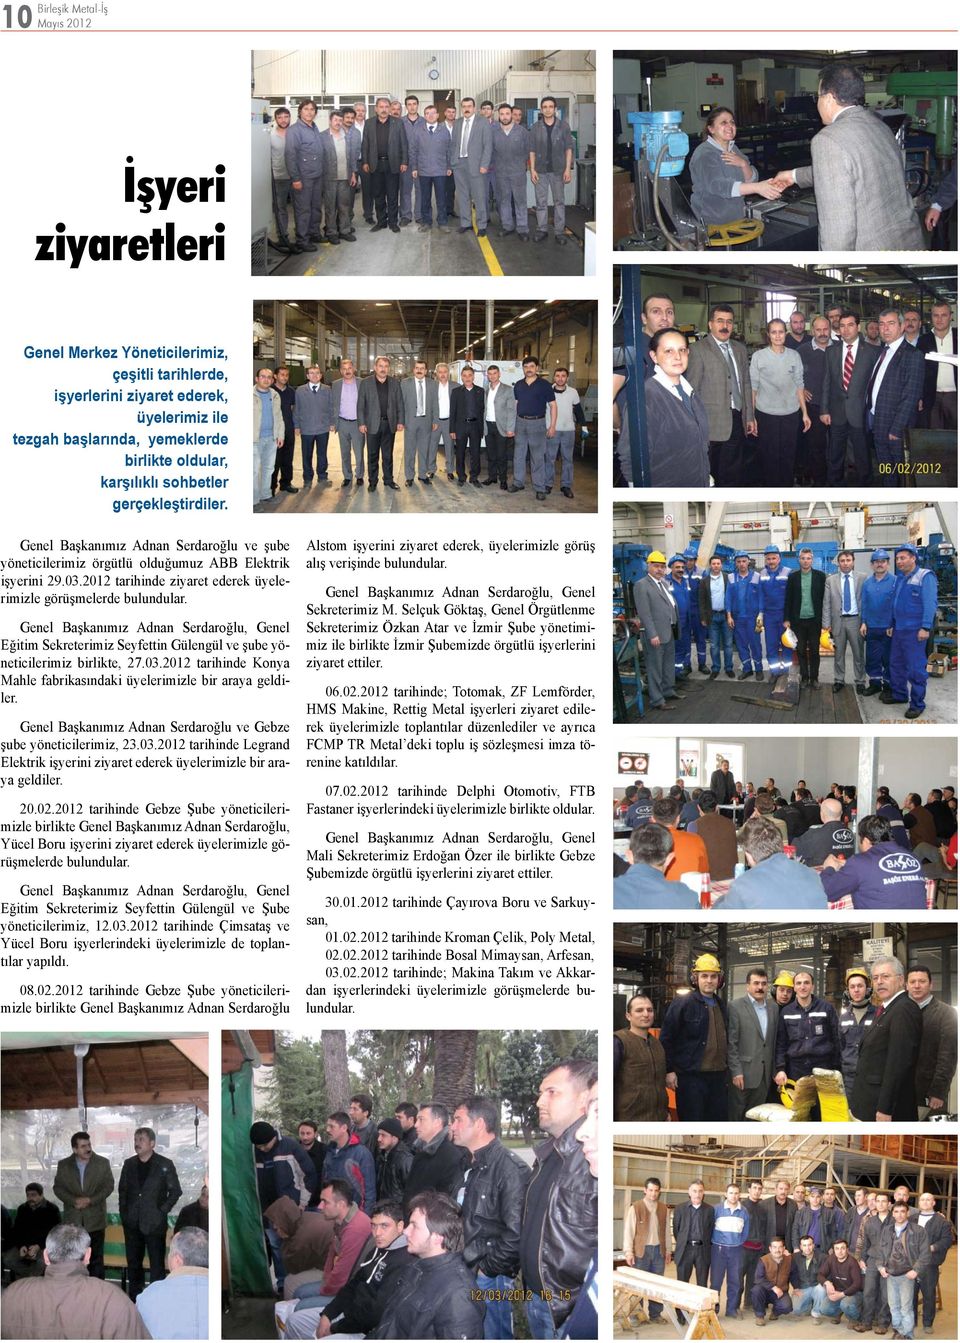 Genel Başkanımız Adnan Serdaroğlu, Genel Eğitim Sekreterimiz Seyfettin Gülengül ve şube yöneticilerimiz birlikte, 27.03.2012 tarihinde Konya Mahle fabrikasındaki üyelerimizle bir araya geldiler.